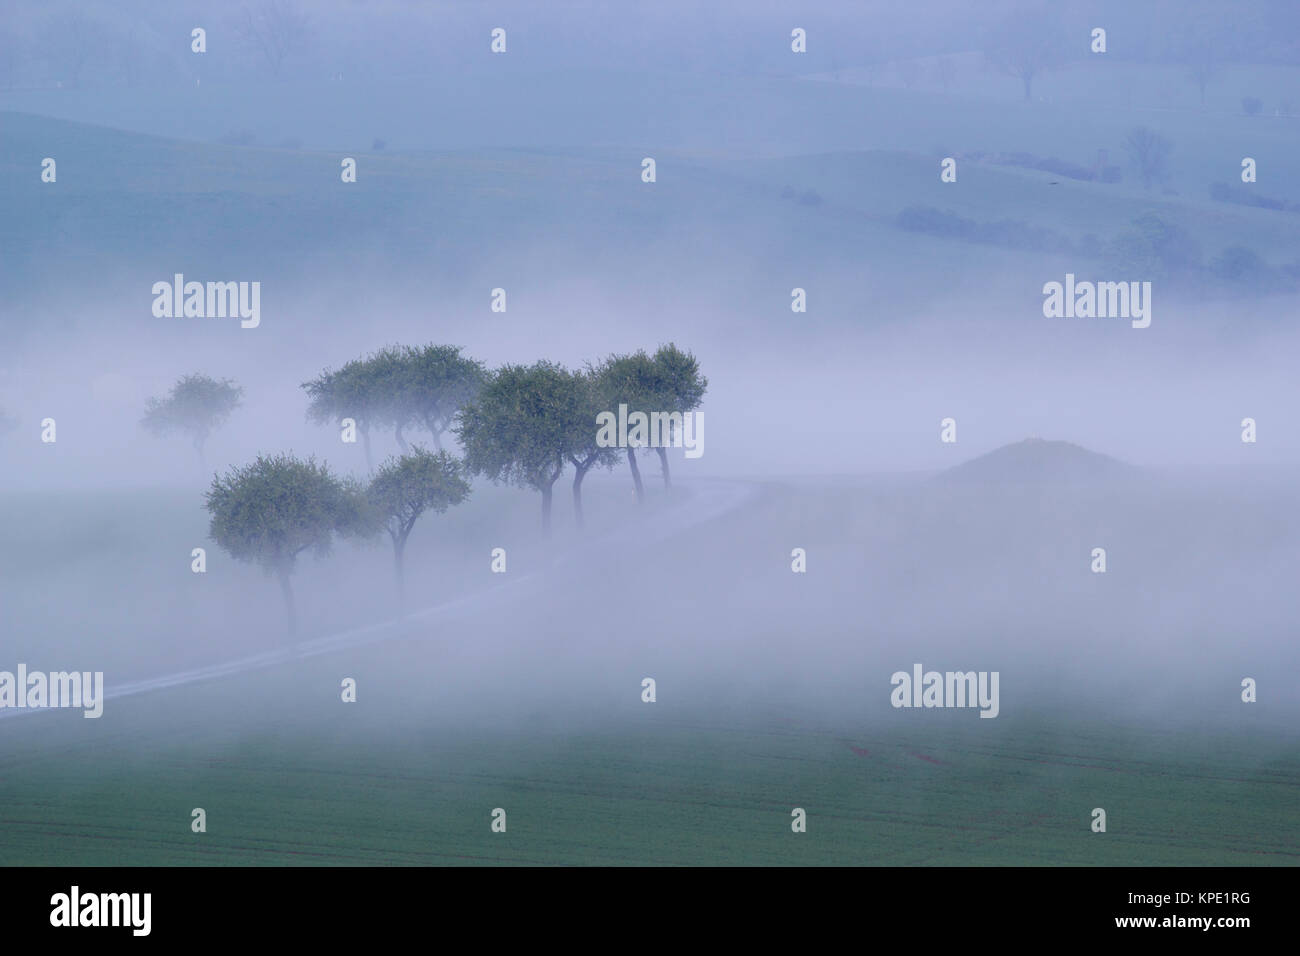 Sonnenaufgang im Nebel auf dem Feld, Wiesen und Wälder im Frühling, Nebelschwaden und durchbrechende Sonne Stockfoto